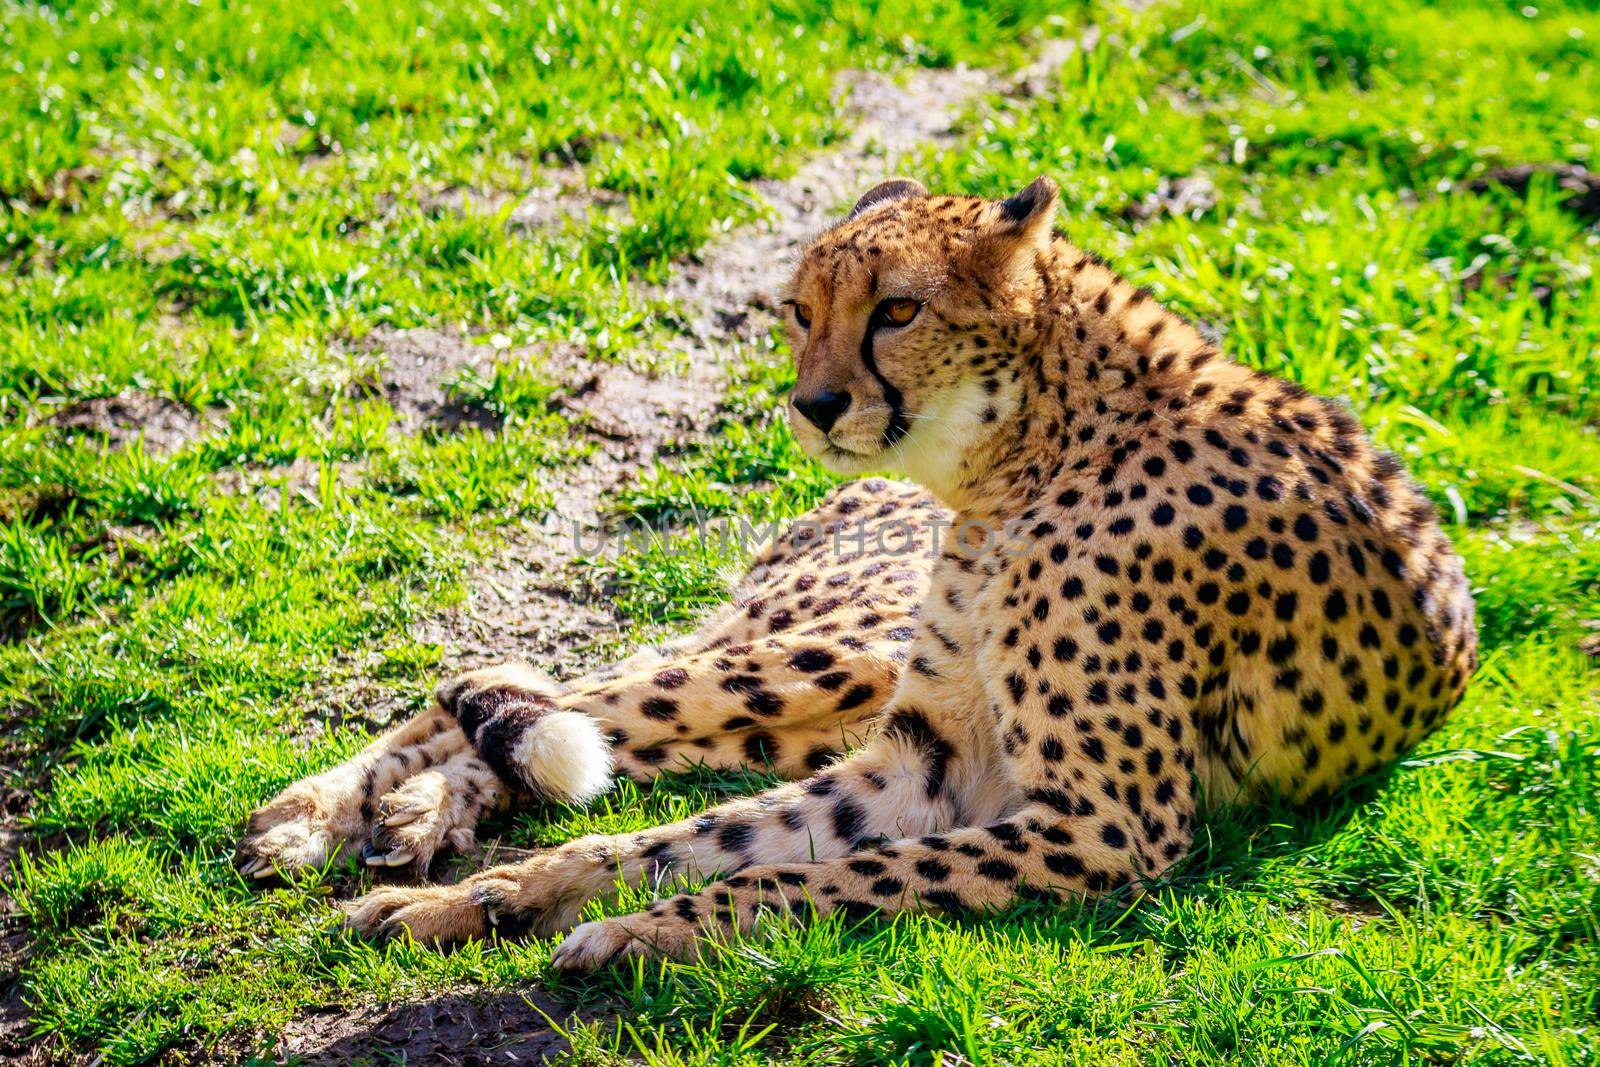 An Amur leopard lies on the grass.